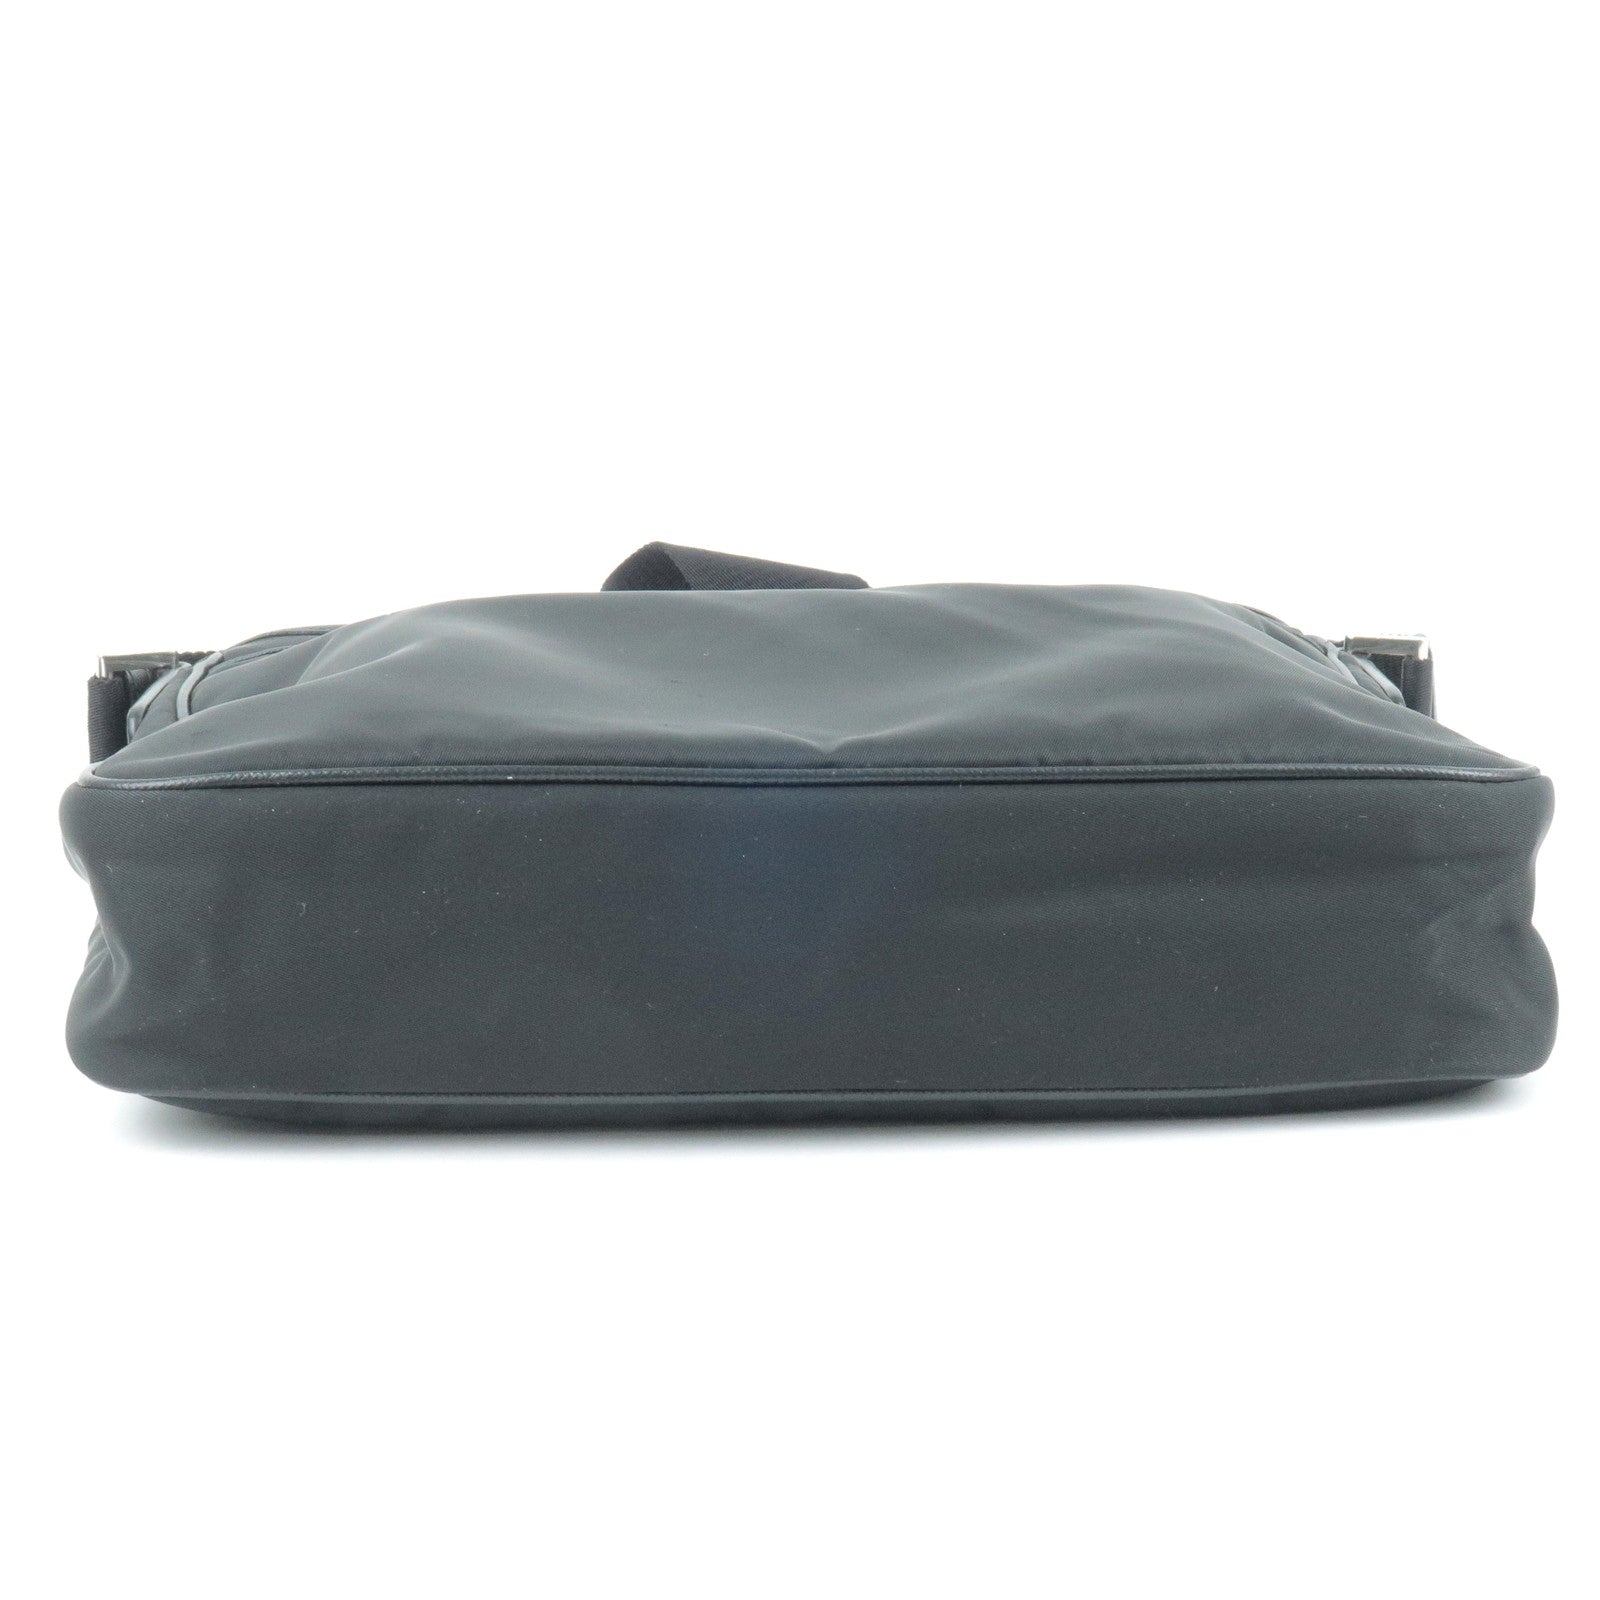  [Prada] TESSUTO + SAFFIANO Nylon Shoulder Bag 2VH797